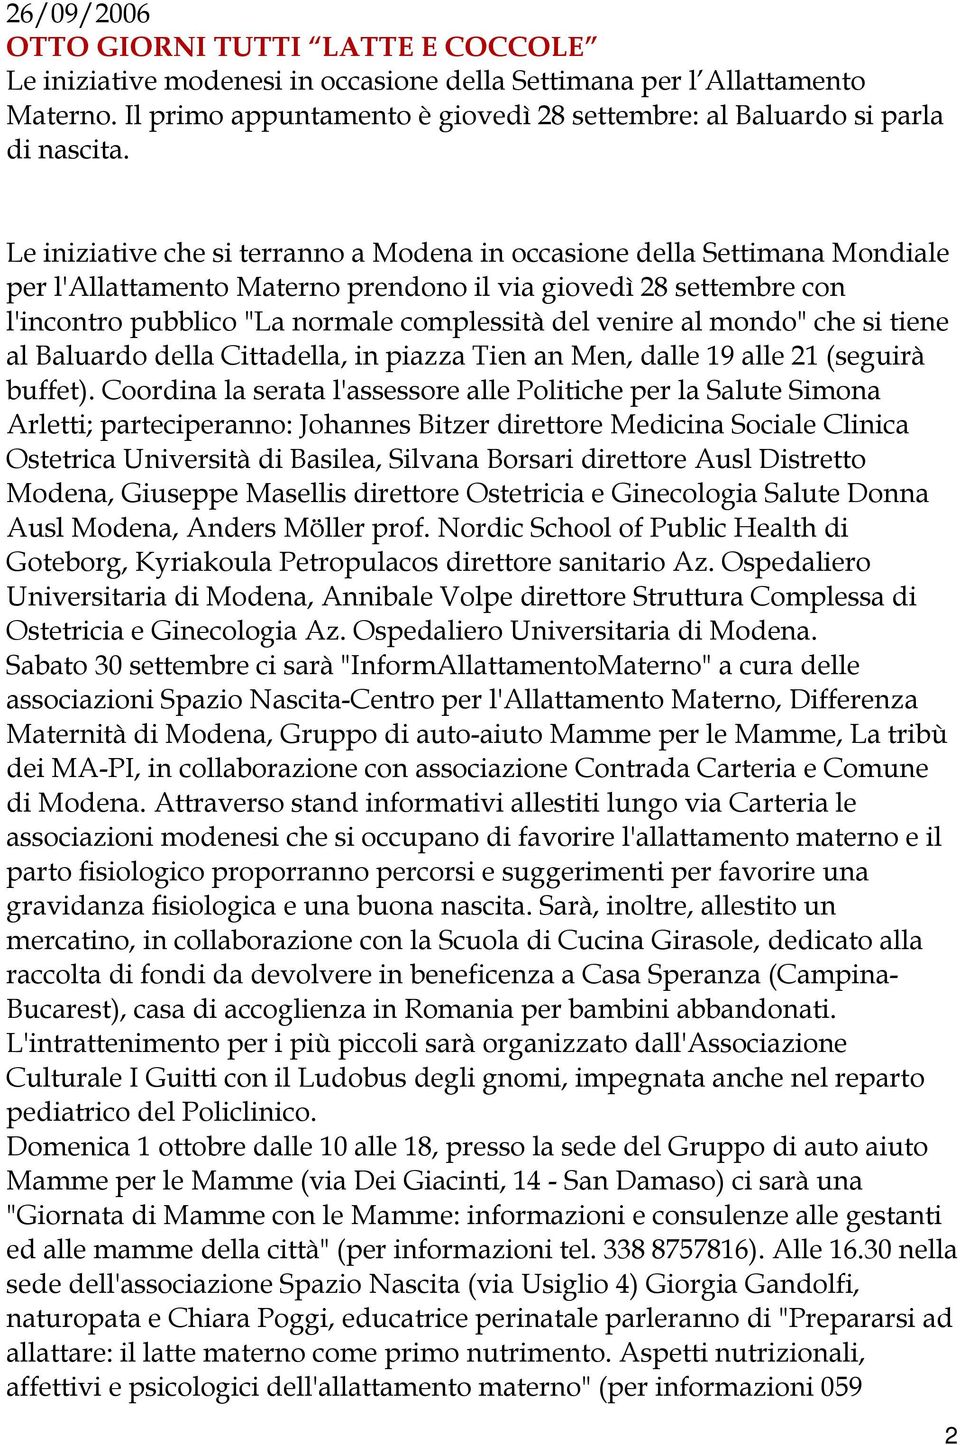 Le iniziative che si terranno a Modena in occasione della Settimana Mondiale per l'allattamento Materno prendono il via giovedì 28 settembre con l'incontro pubblico "La normale complessità del venire